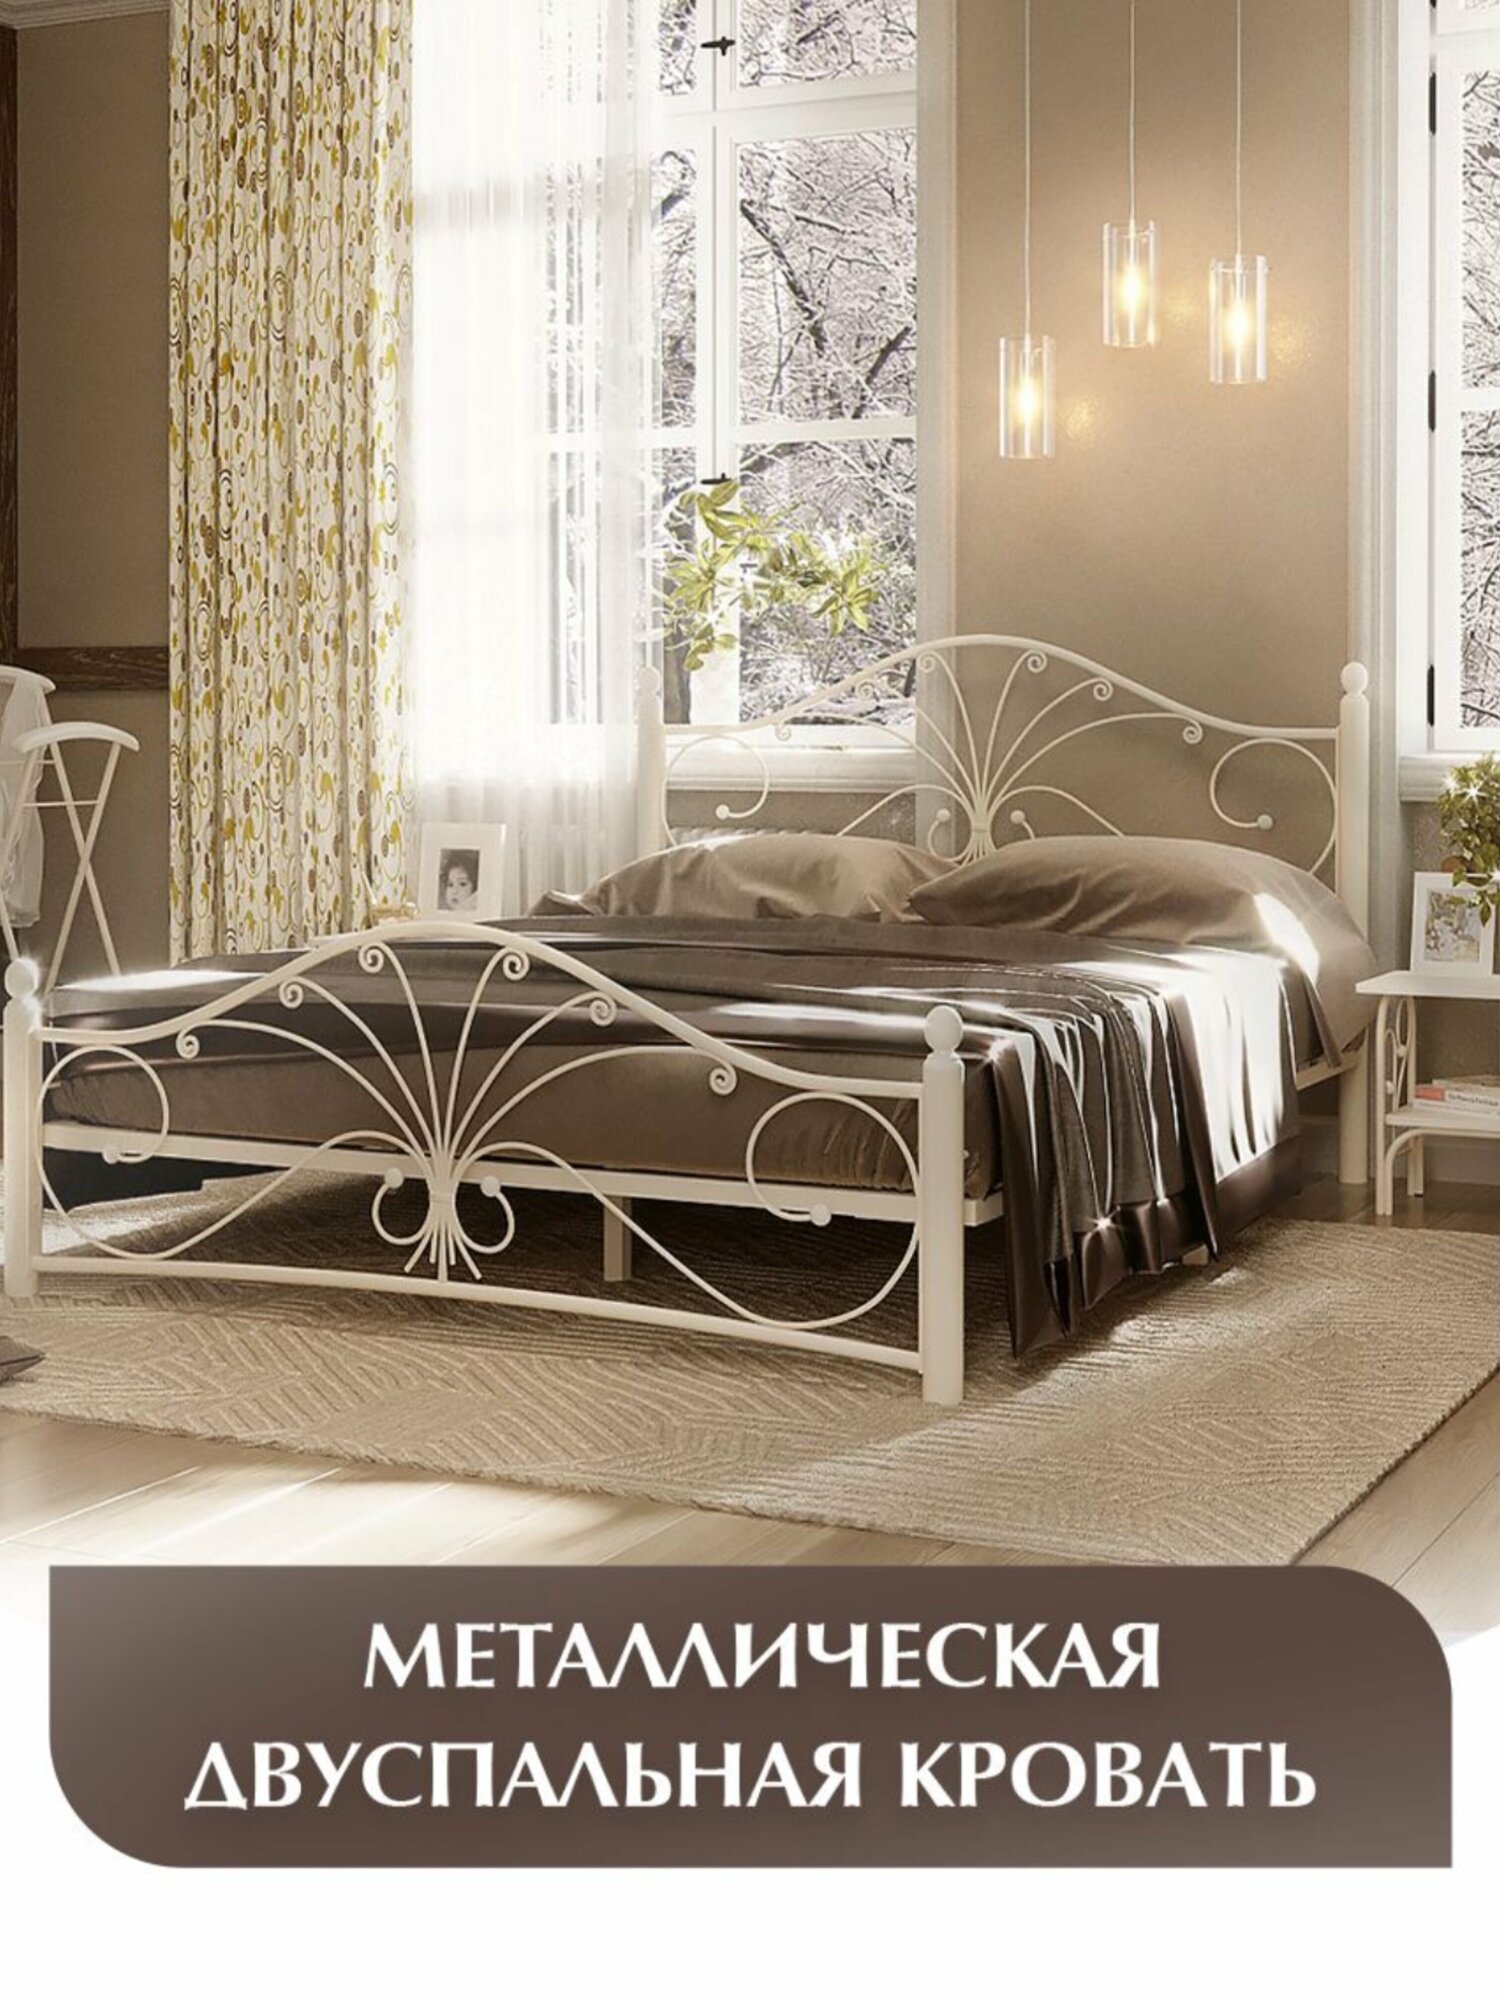 Двуспальная кровать, кремово-белая, железная, металлическая, 120х200 см